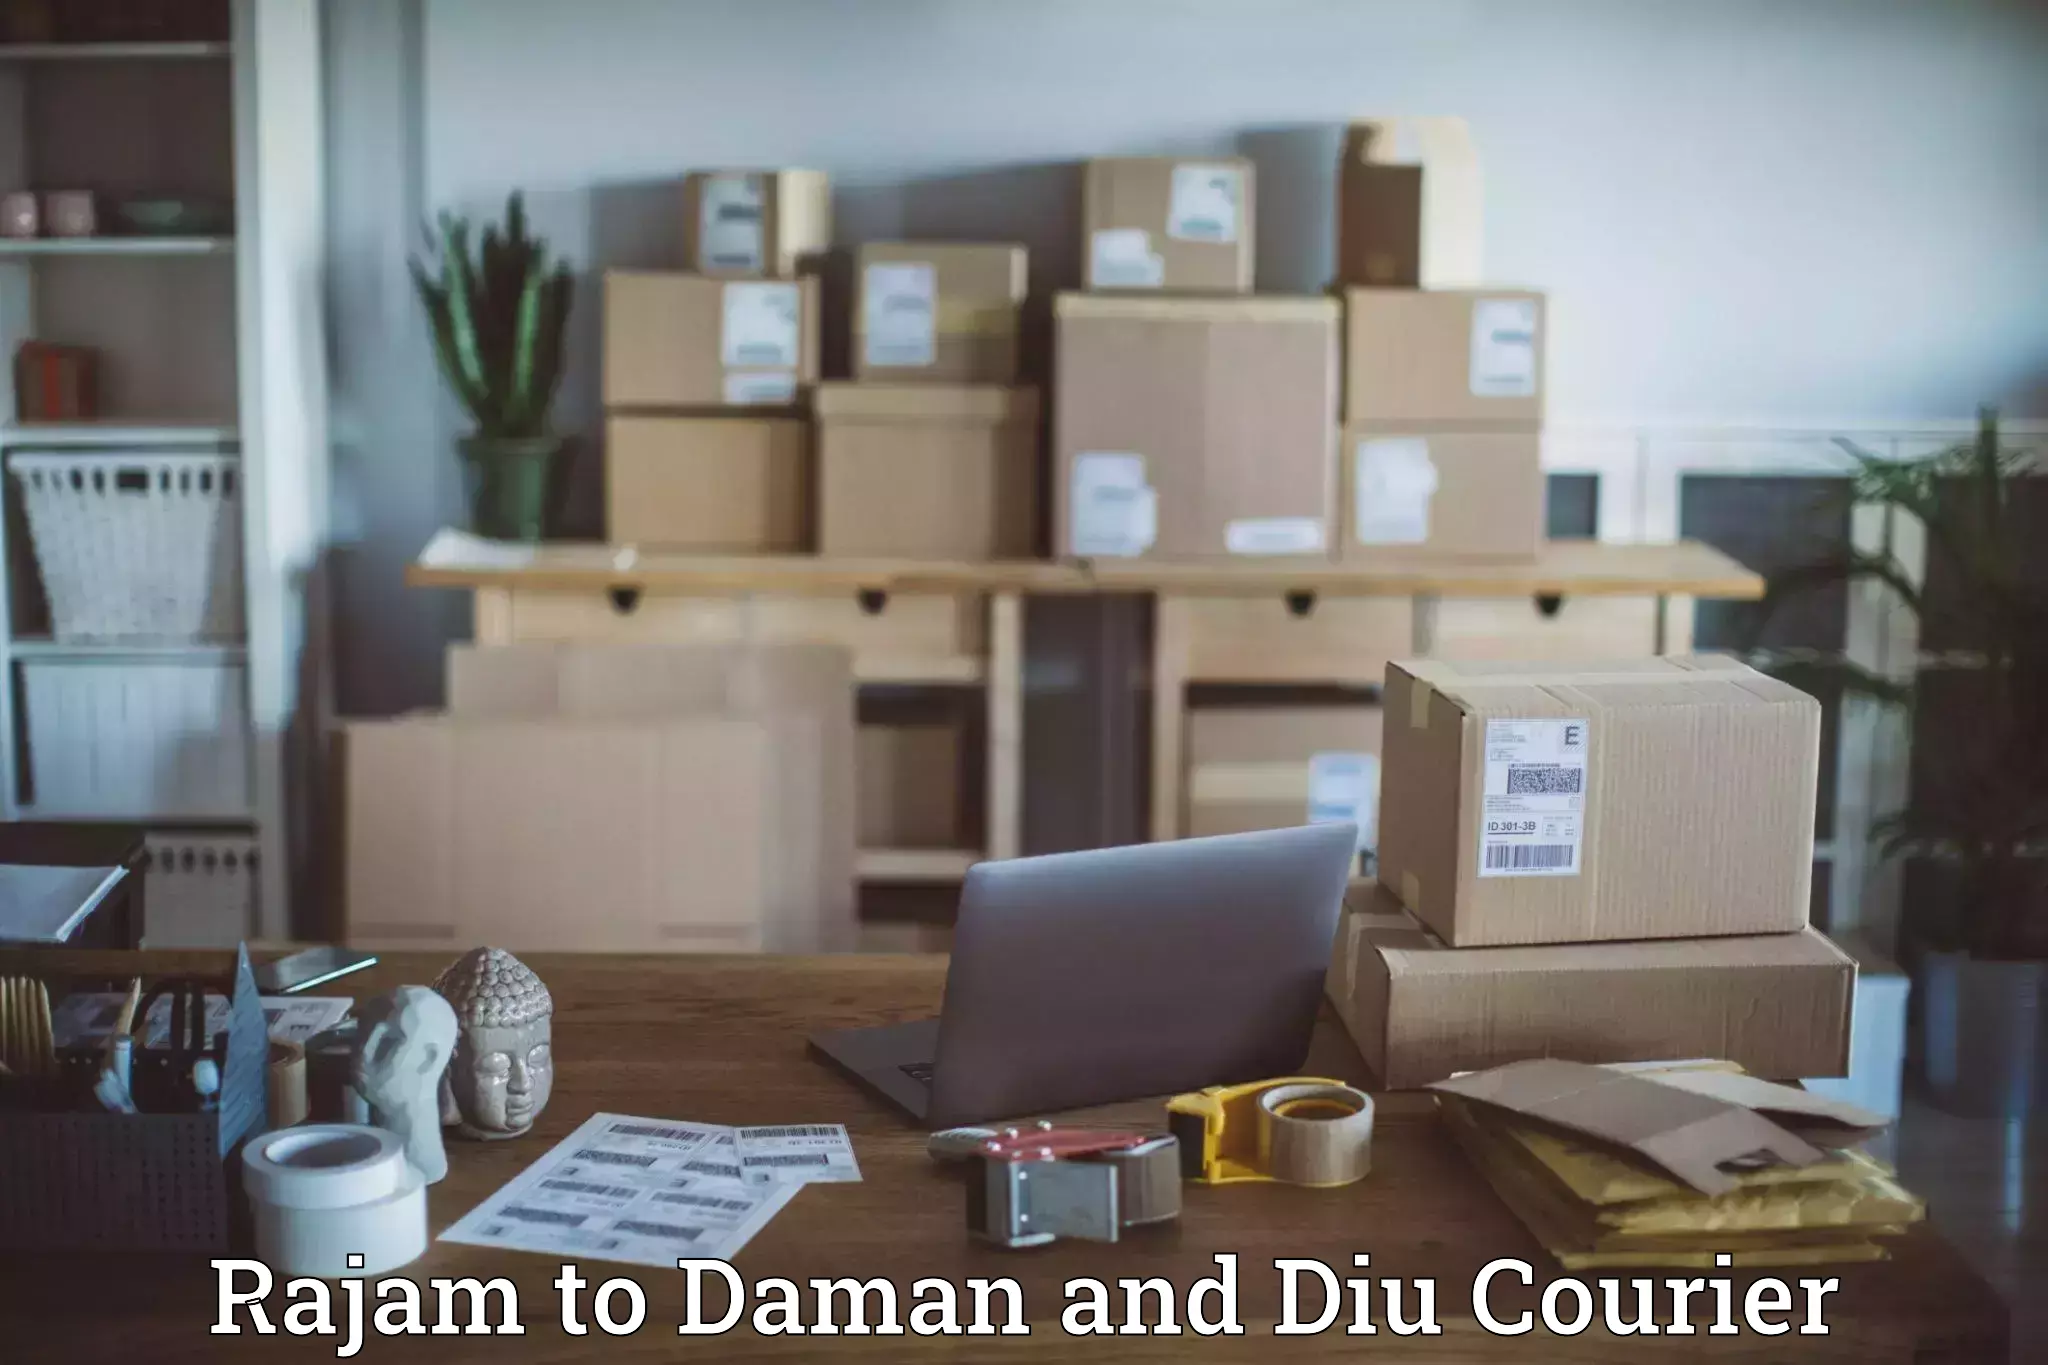 International parcel service Rajam to Daman and Diu